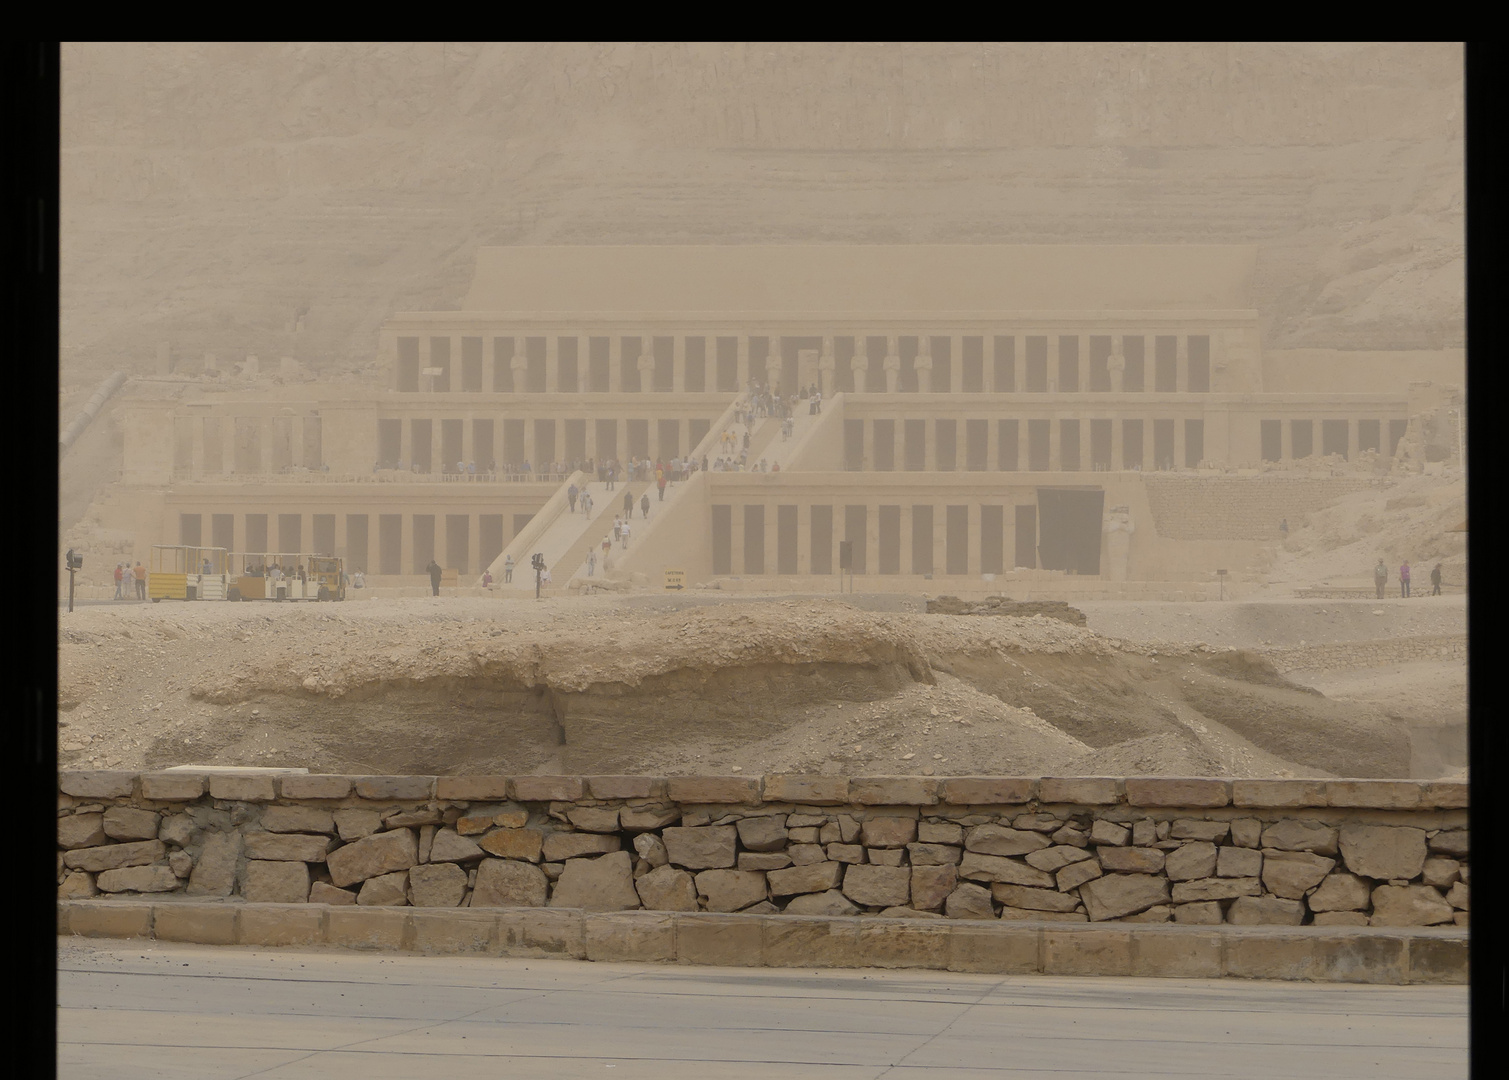 Hatschepsut Tempel im Sandsturm